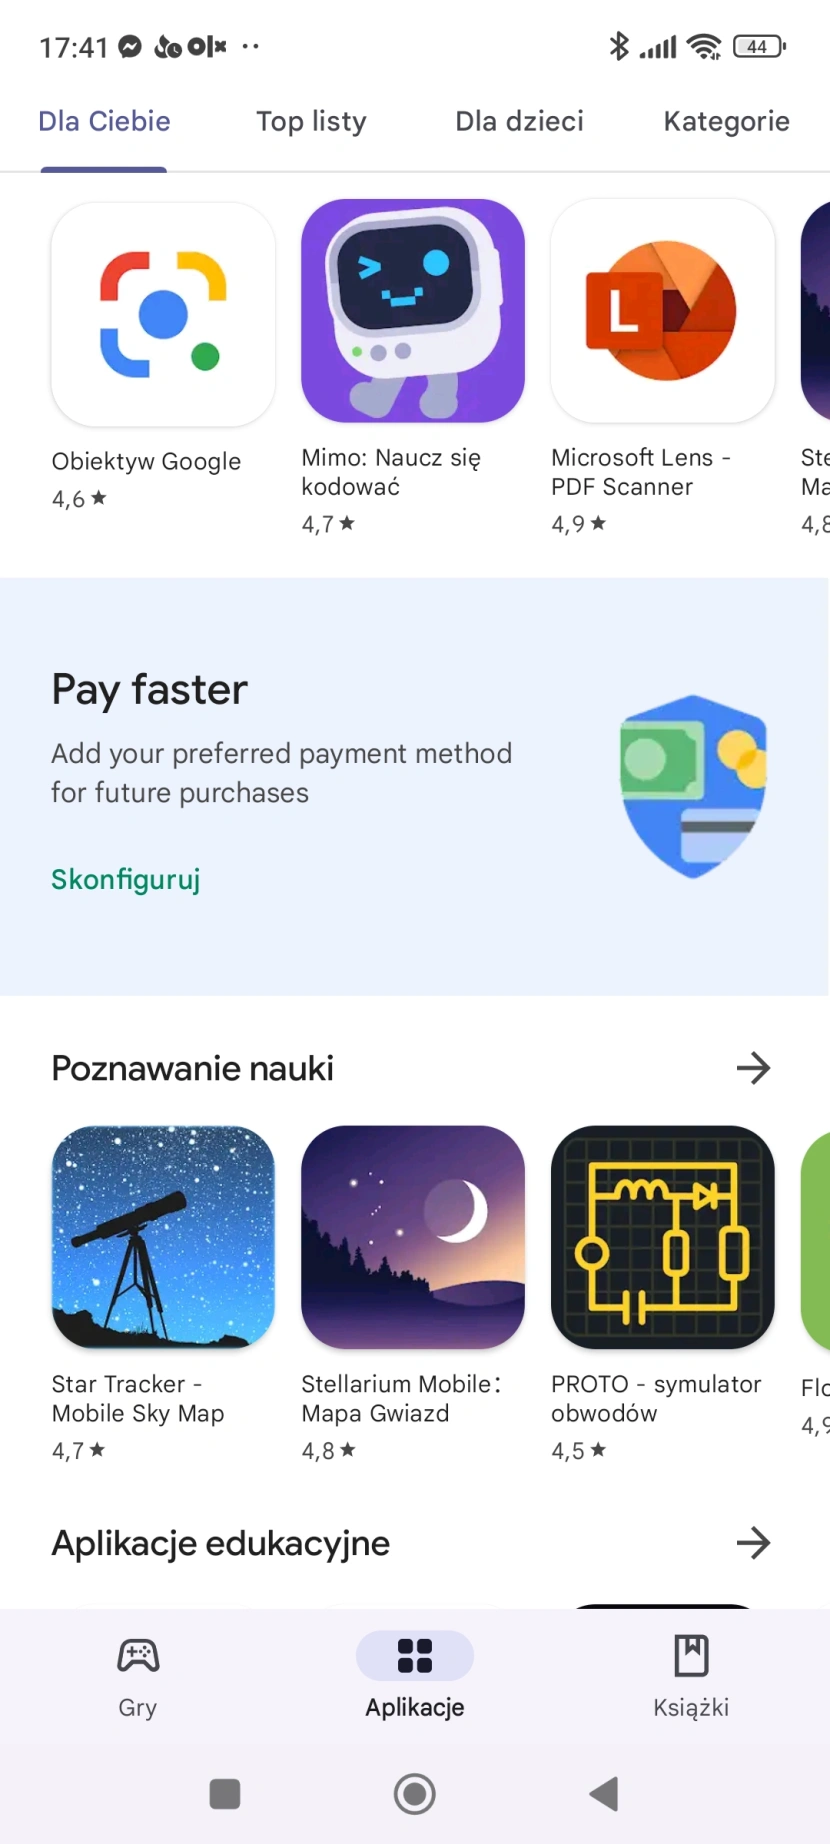 Google Play - oficjalny sklep z aplikacjami na Androida
Źródło: Daniel Olszewski / Computerworld